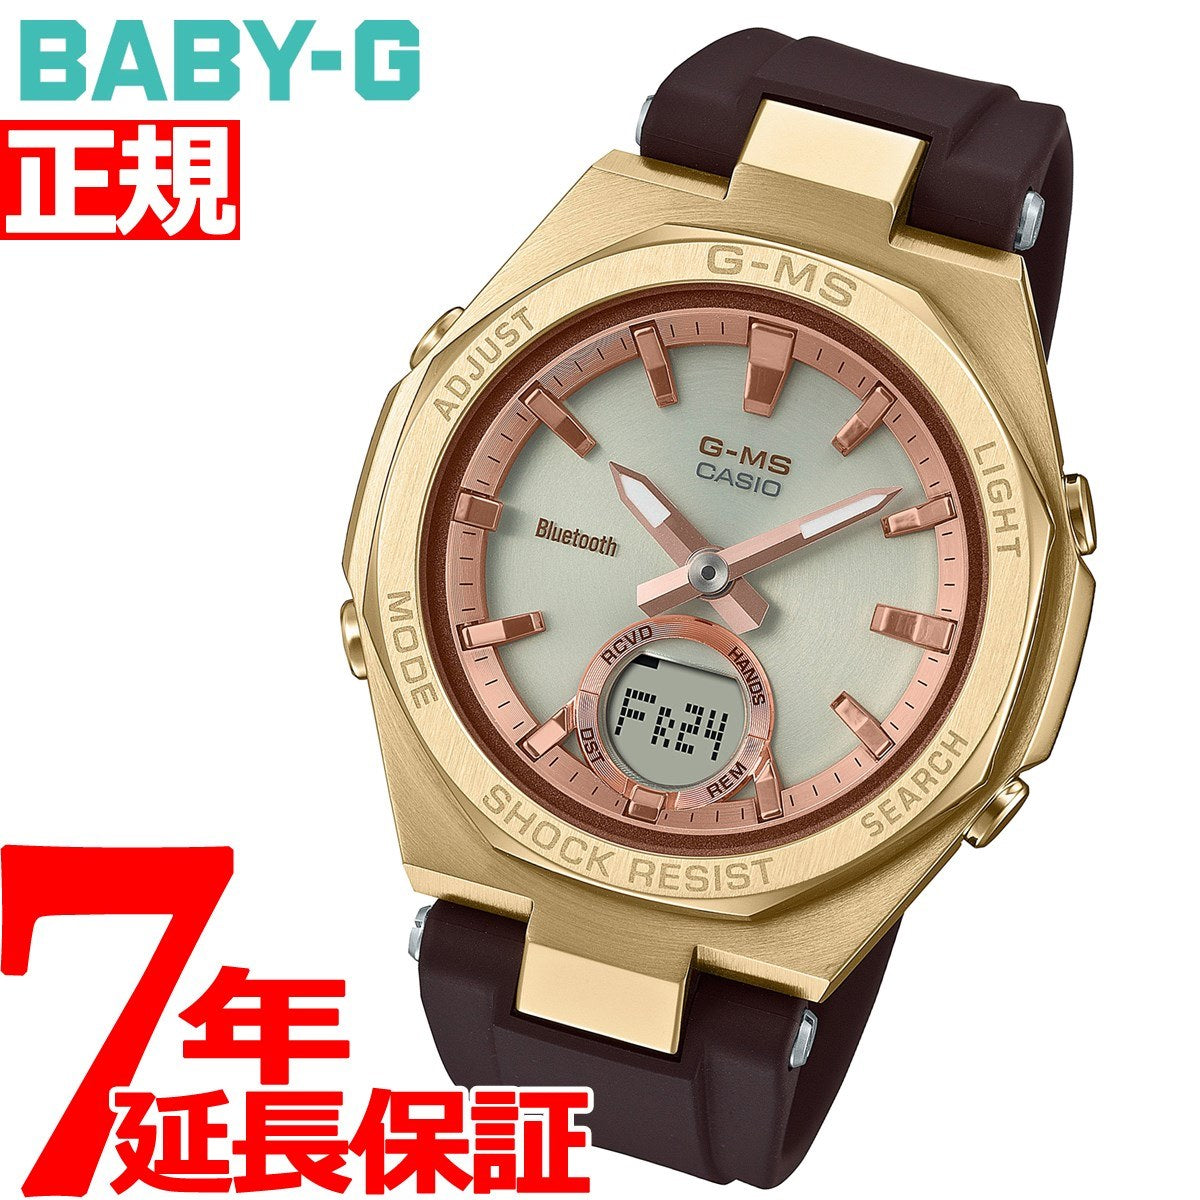 BABY-G カシオ ベビーG レディース G-MS ソーラー 腕時計 MSG-B100MV-5AJF ペアウォッチ プレシャス ハート セレクション 金星 PRECIOUS HEART SELECTION